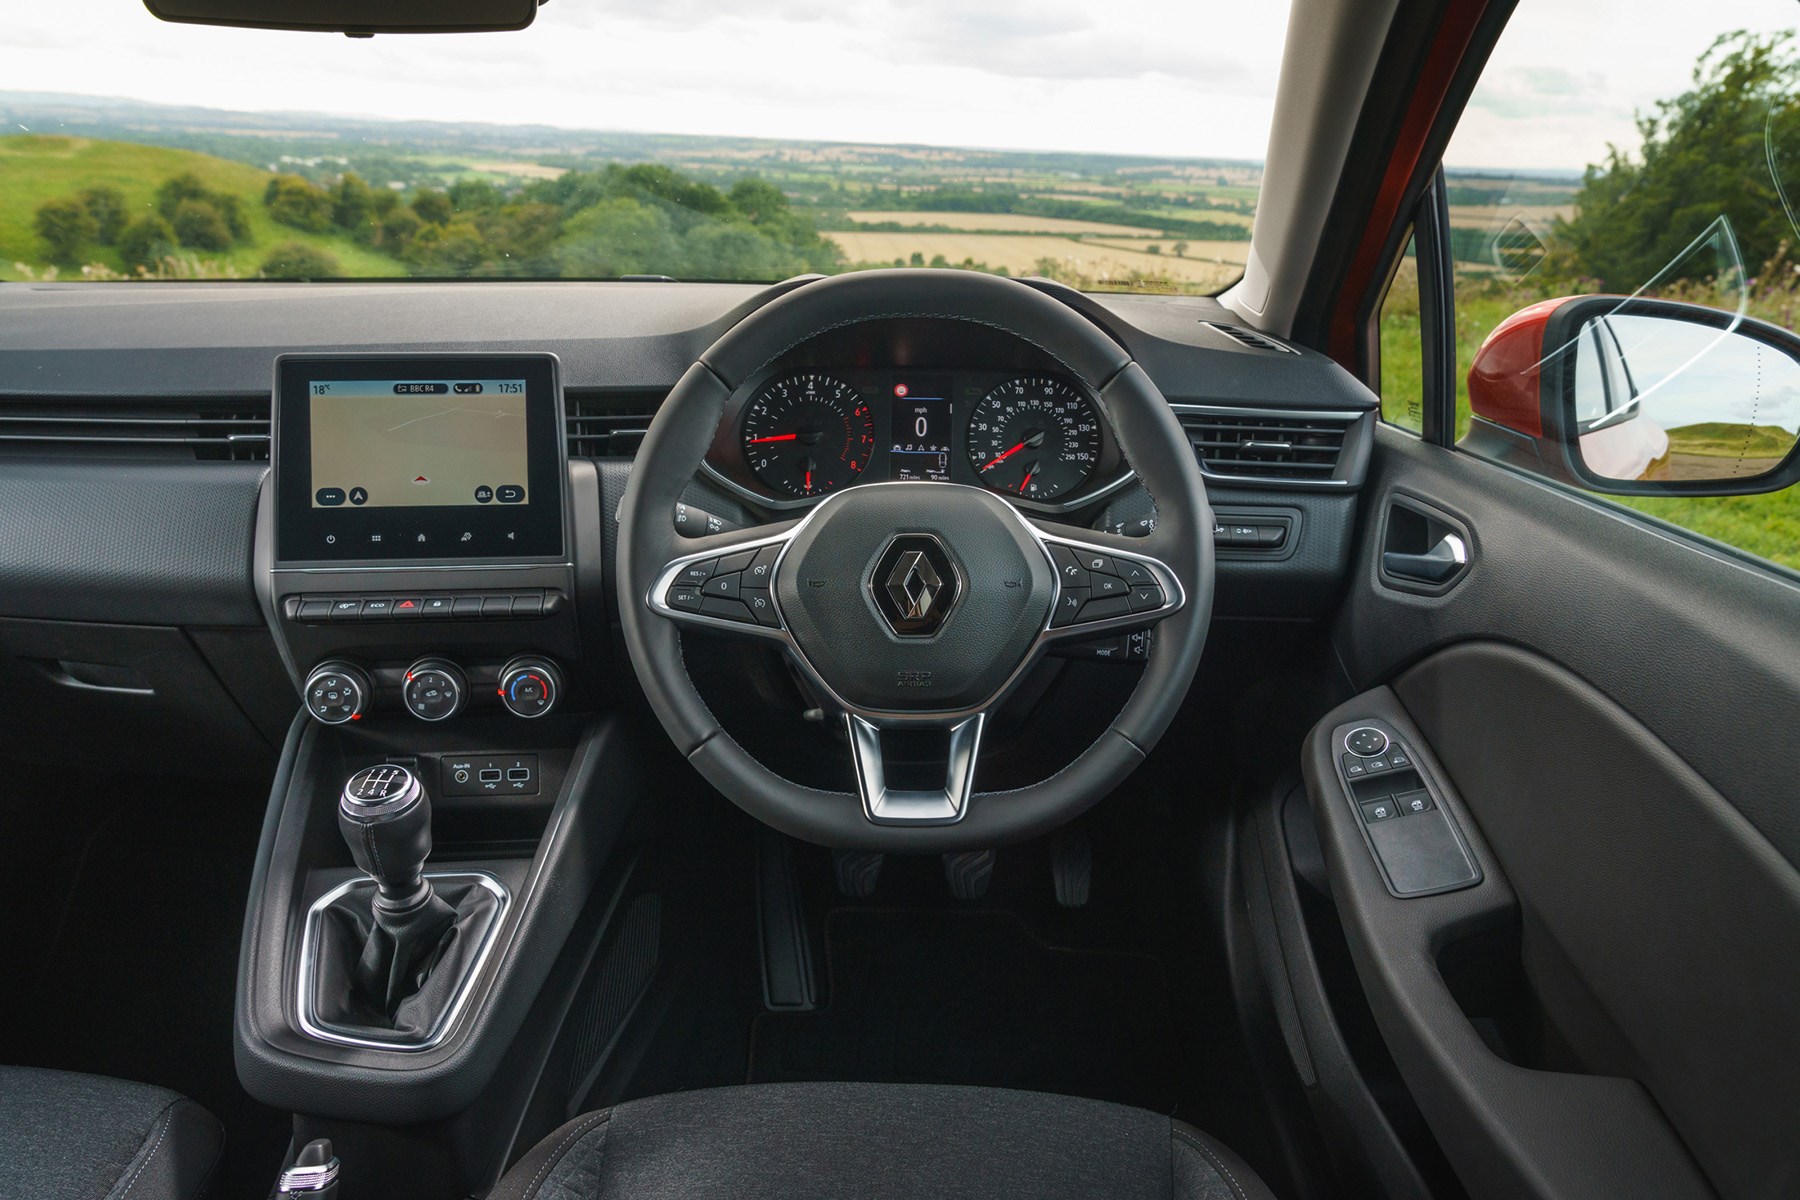 Renault Clio interior 2019